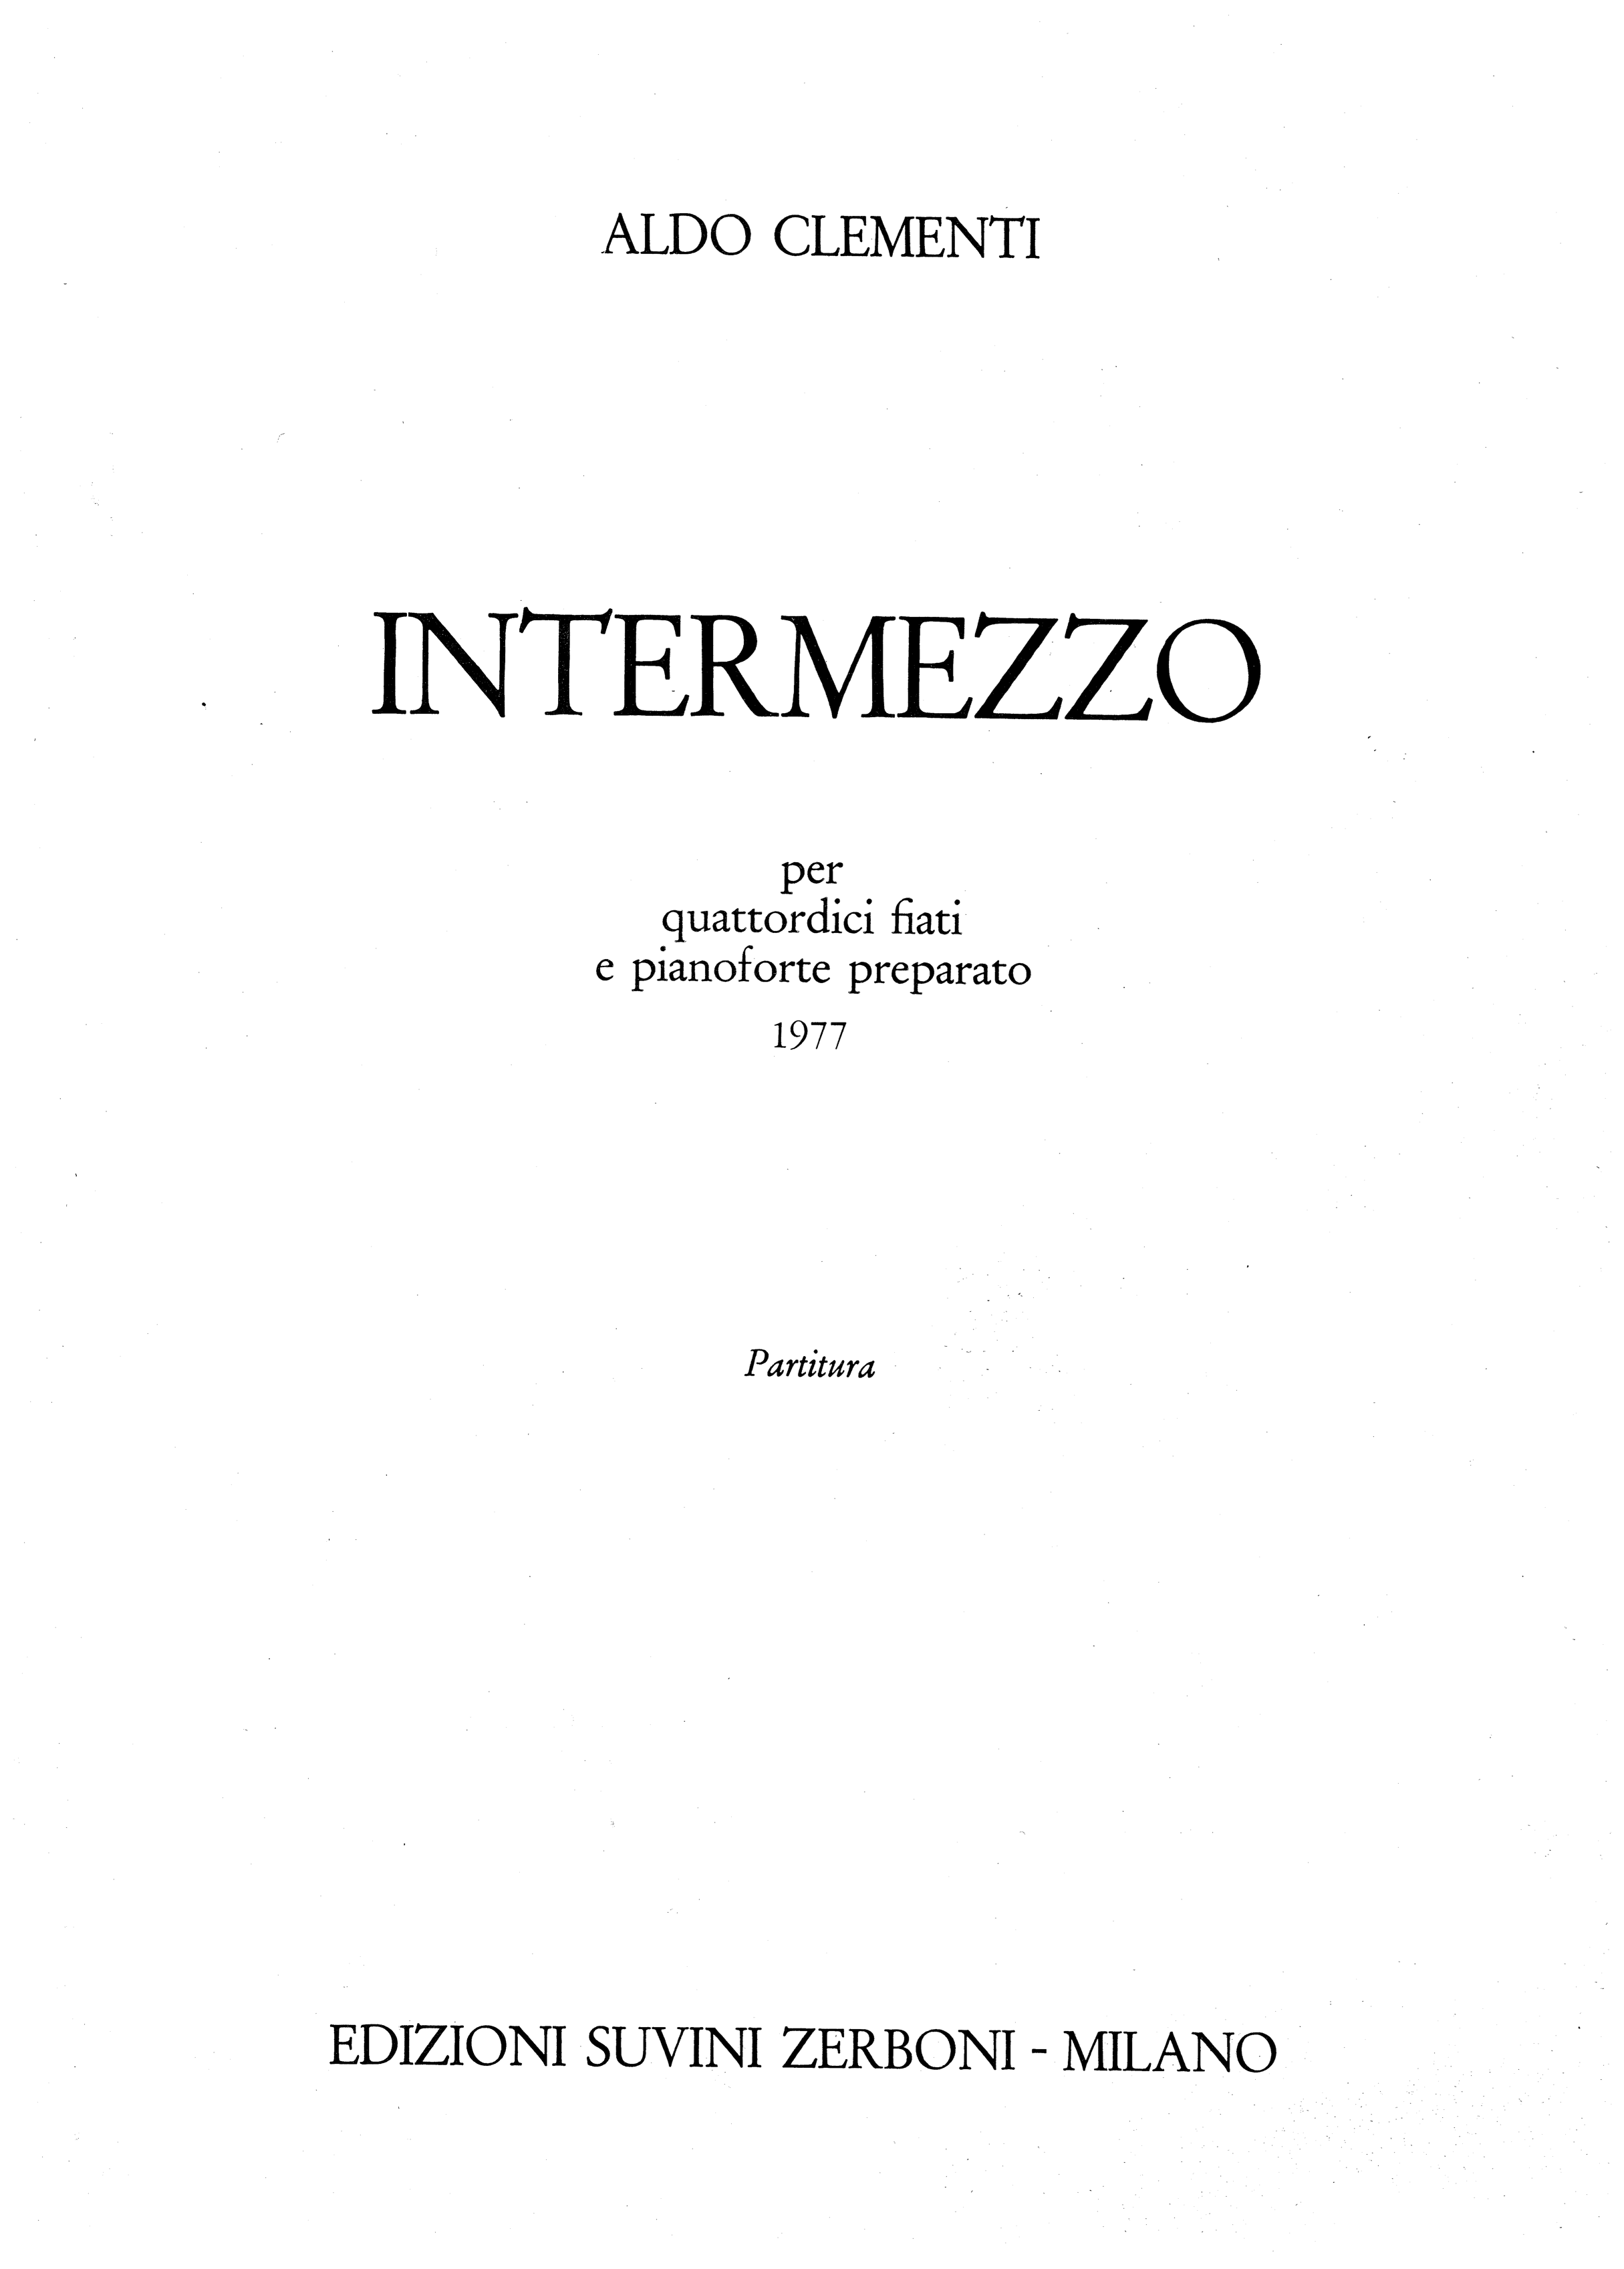 Intermezzo_Clementi Aldo 1